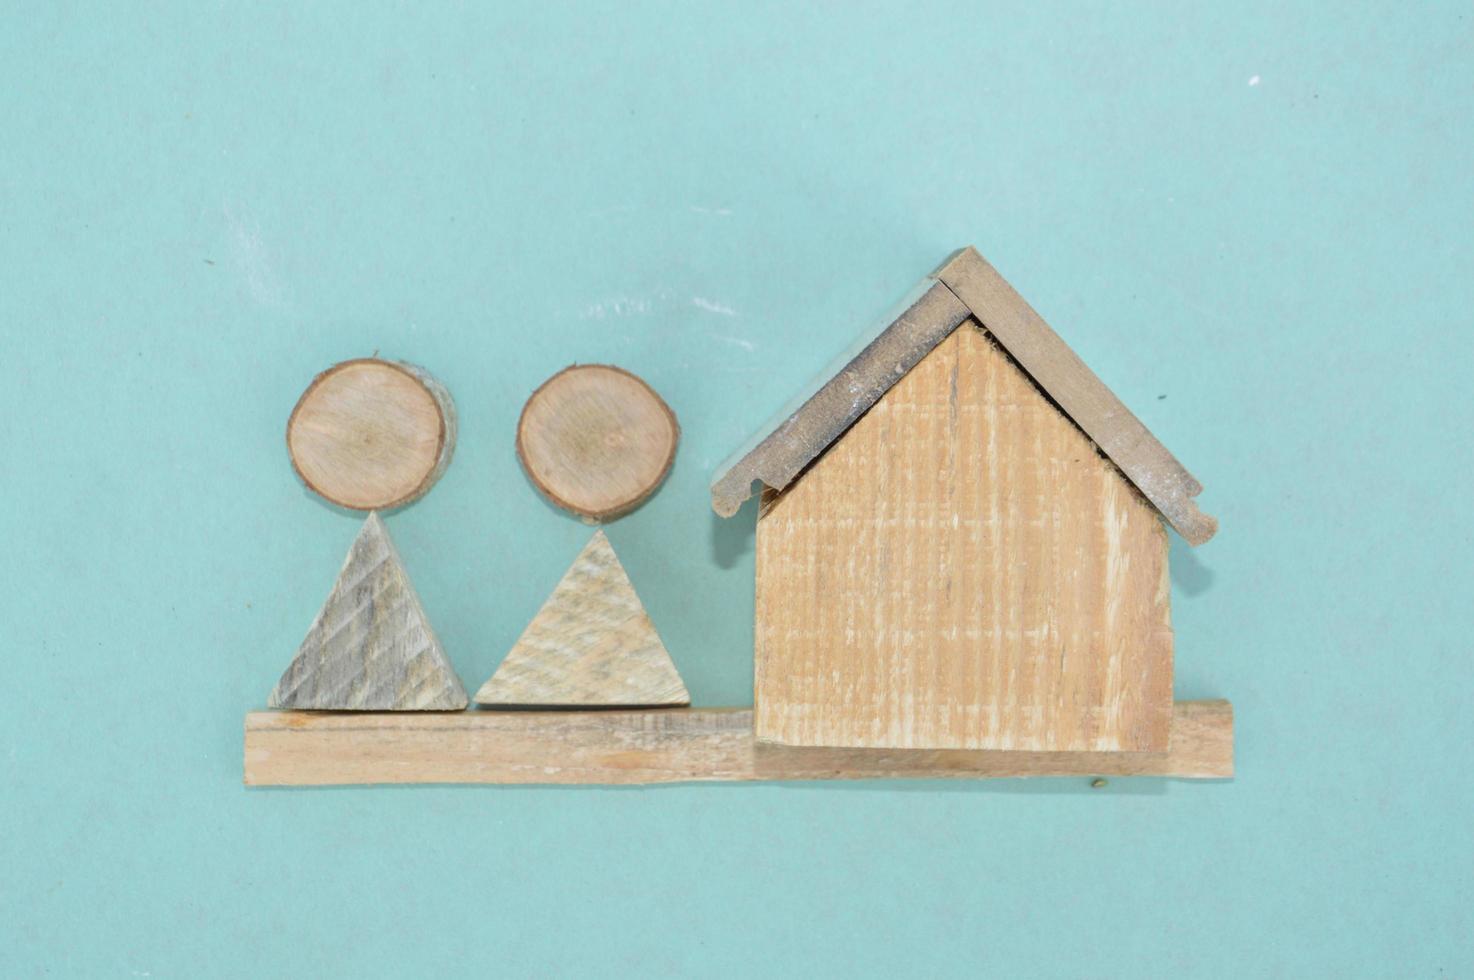 modelo de madera de una casa y una familia foto